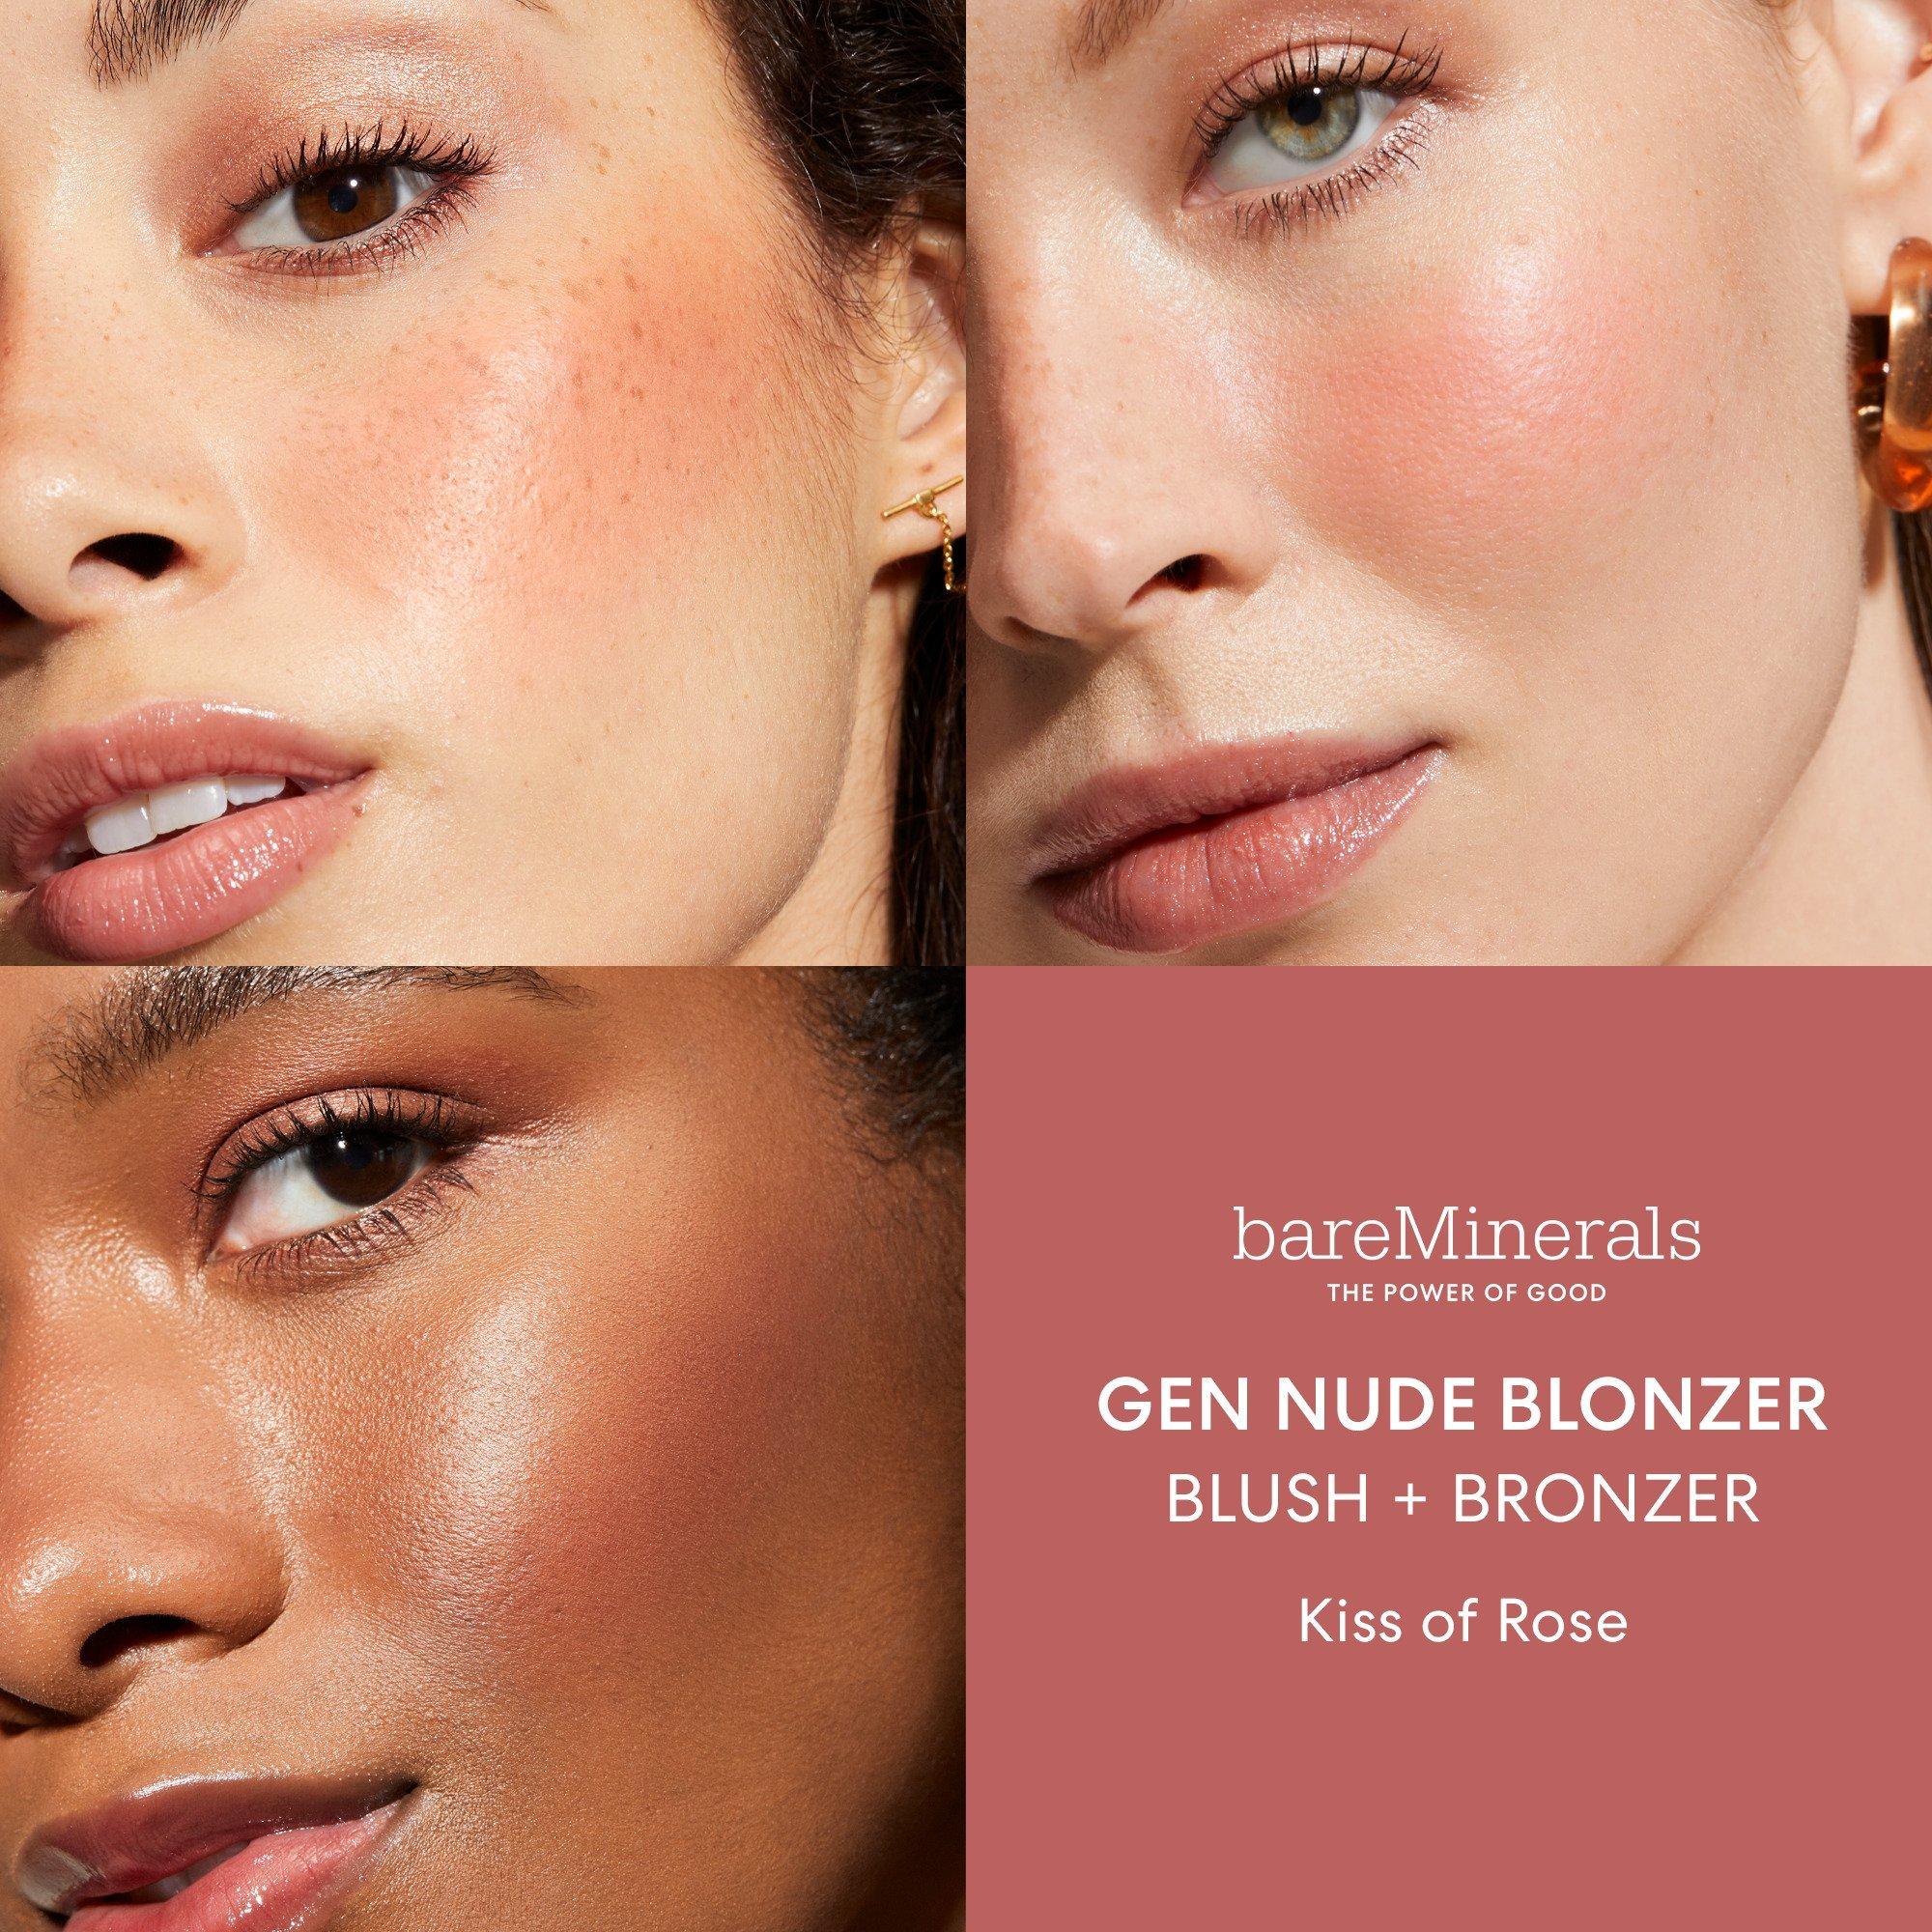 bareMinerals Gen Nude Blonzer Blush + Bronzer / Kiss of Rose